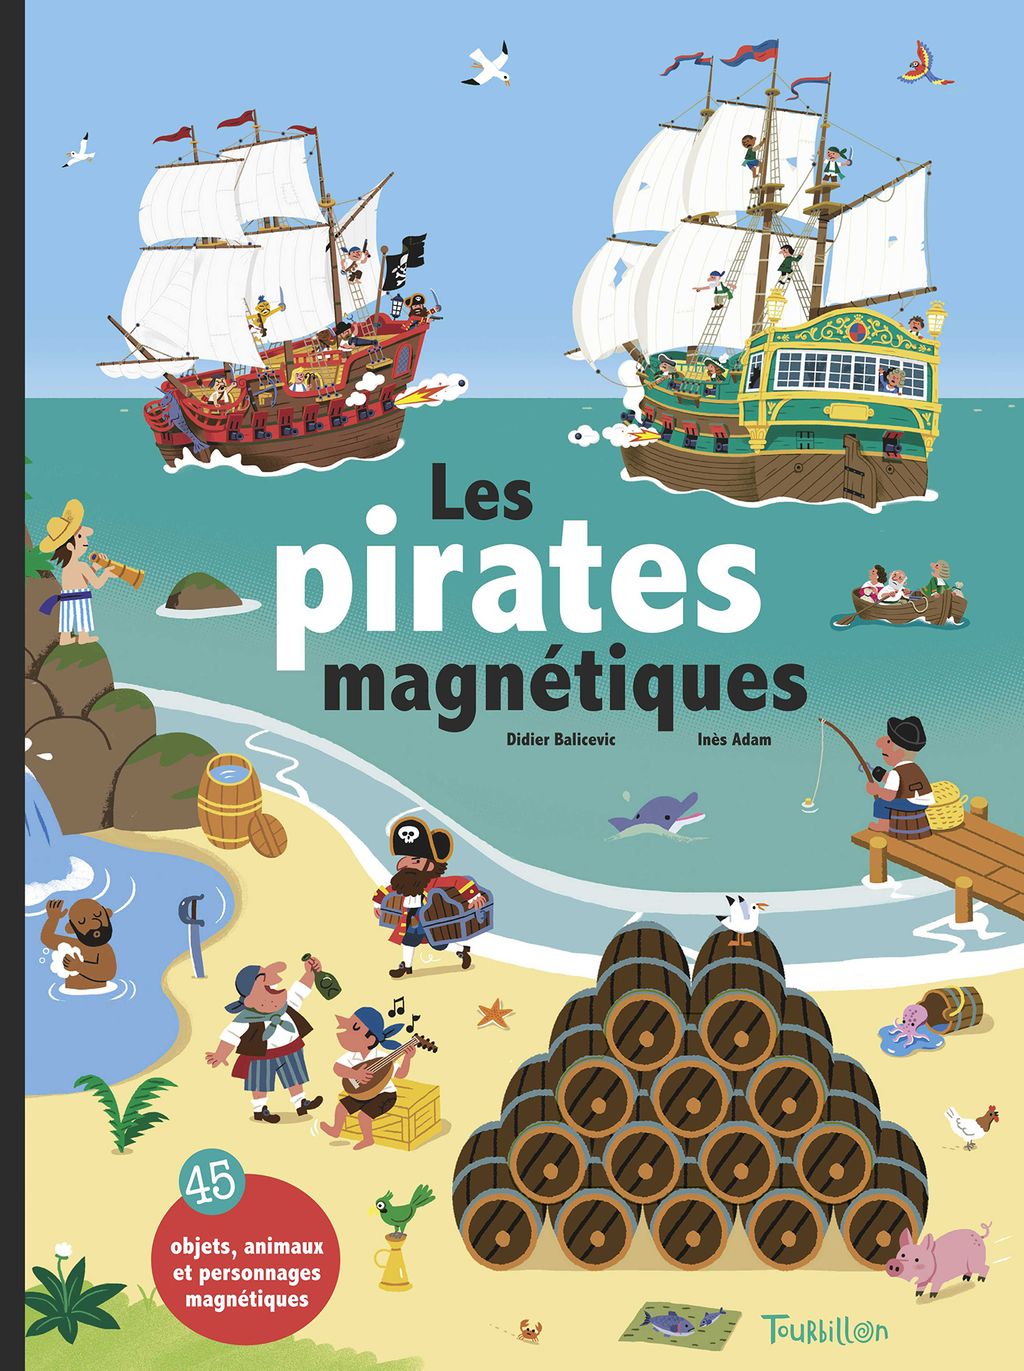 « Les pirates magnétiques » cover